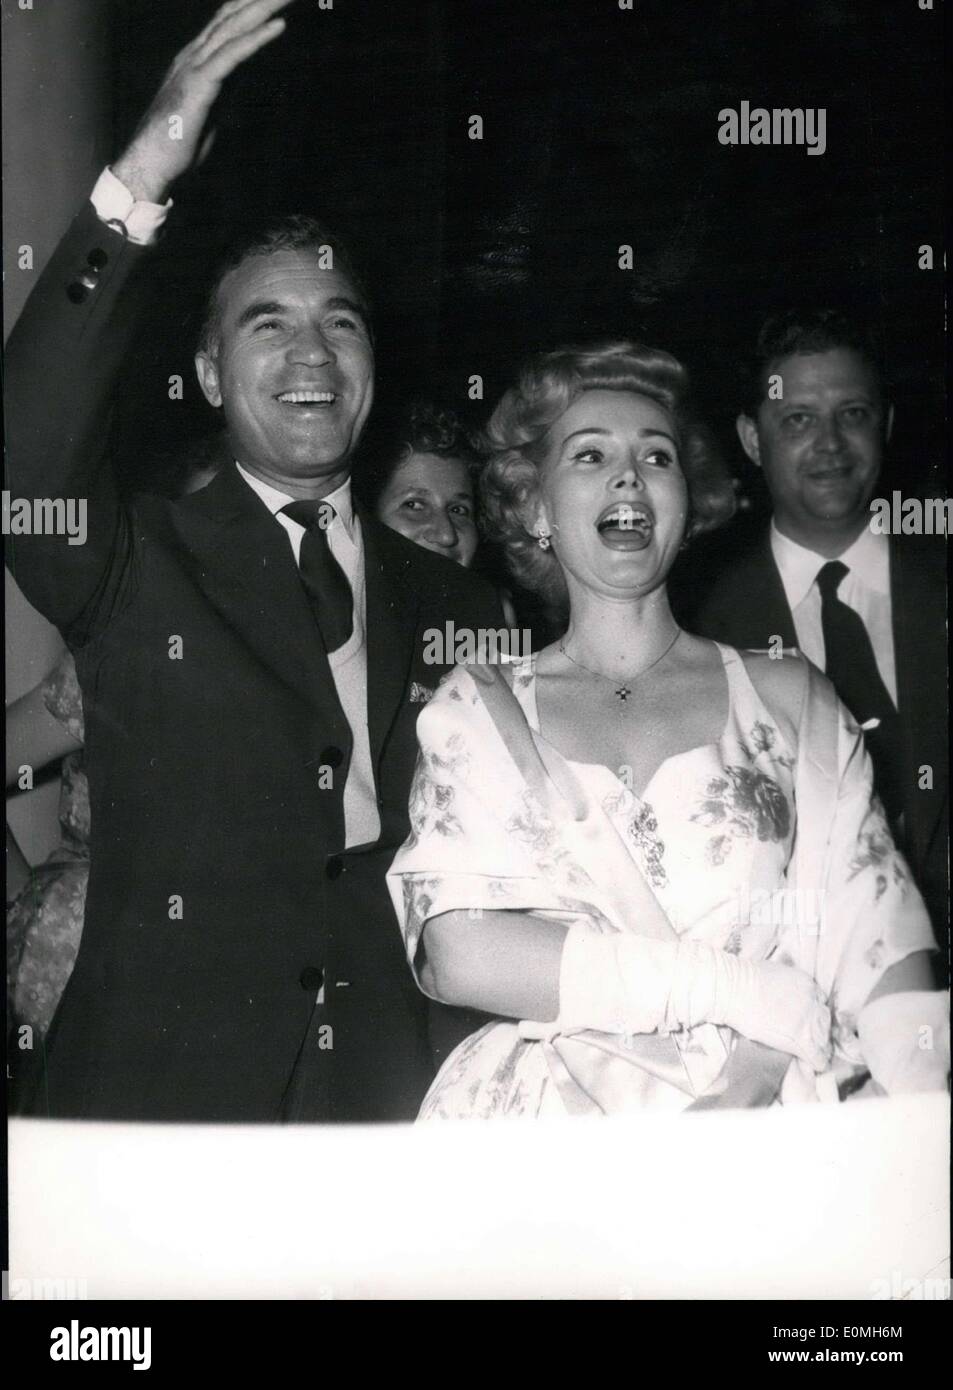 Maggio 09, 1955 - Cannes Festival Cine. Zsa Zsa Gabor e Porfirio Rubiroso arrivare al partito dato dalla delegazione americana presso gli ambasciatori'. Cannes. Foto Stock